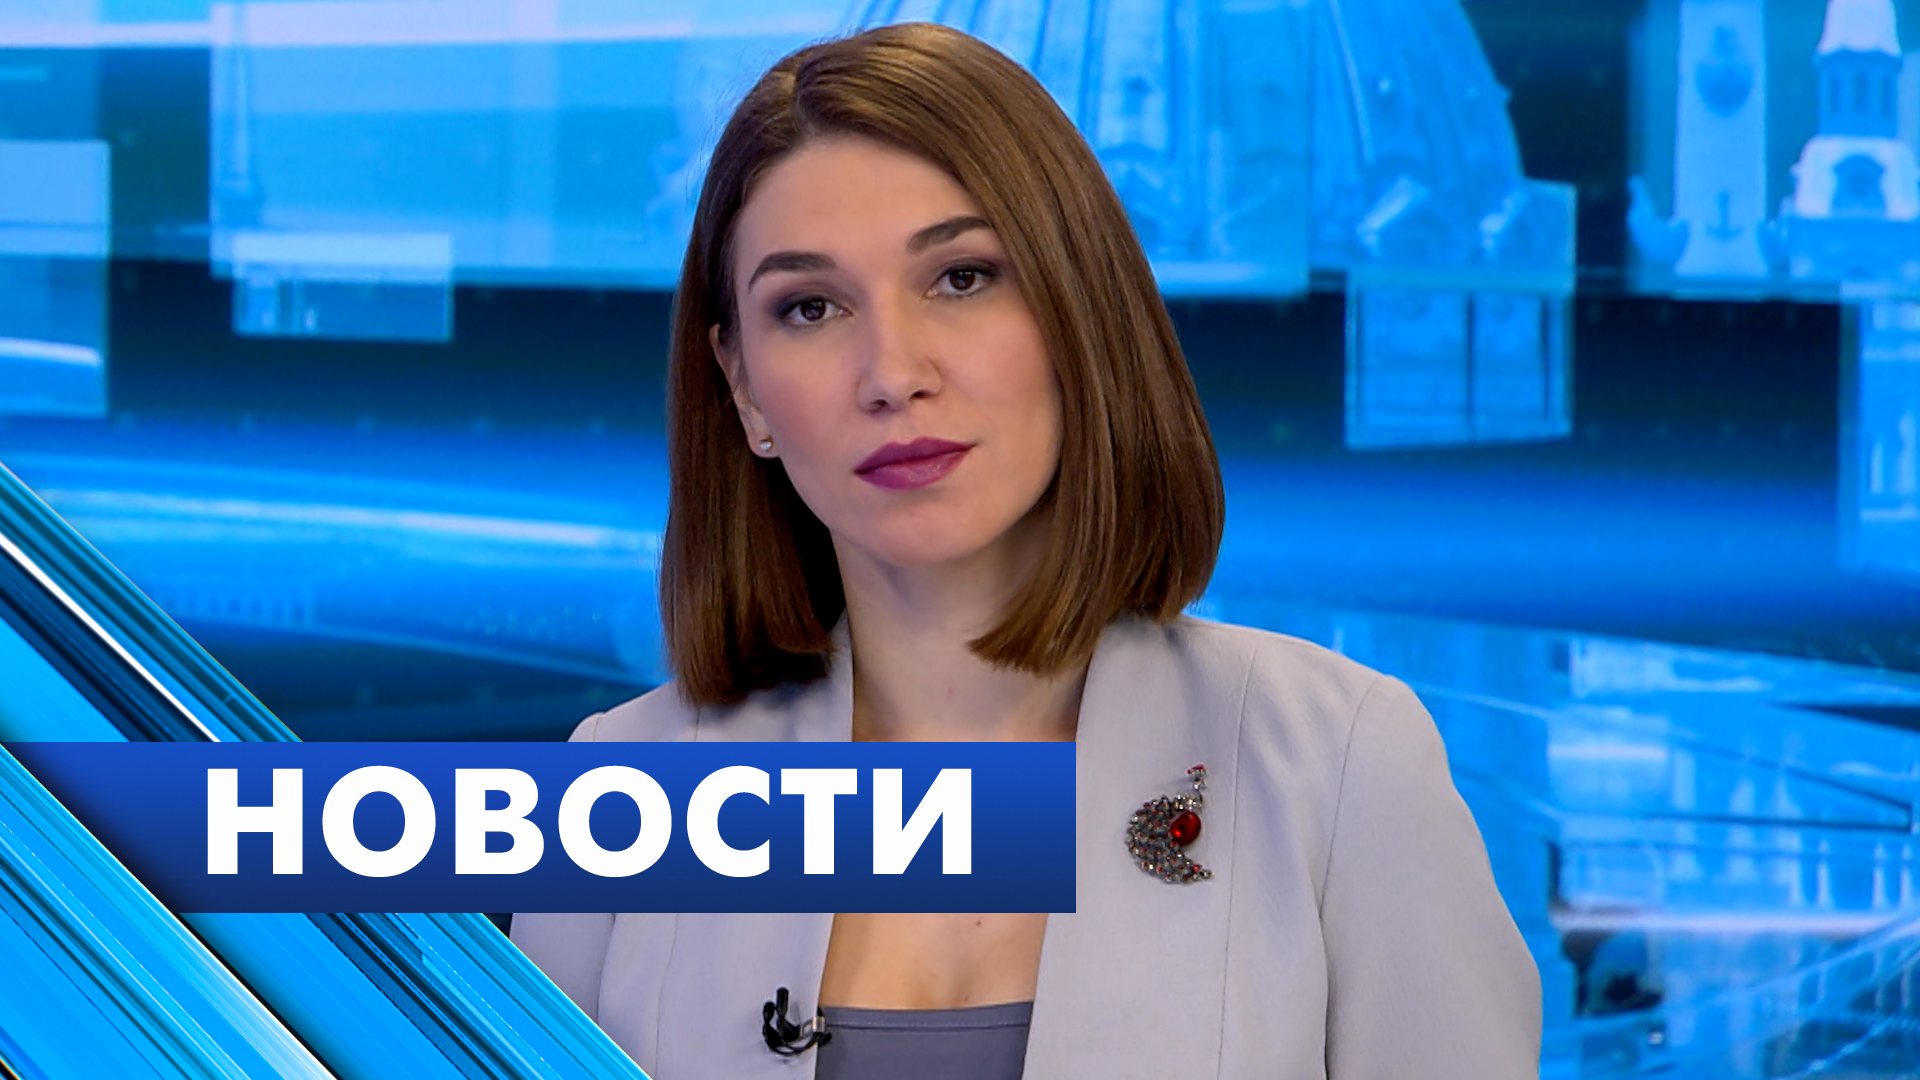 Главные новости Петербурга / 14 февраля